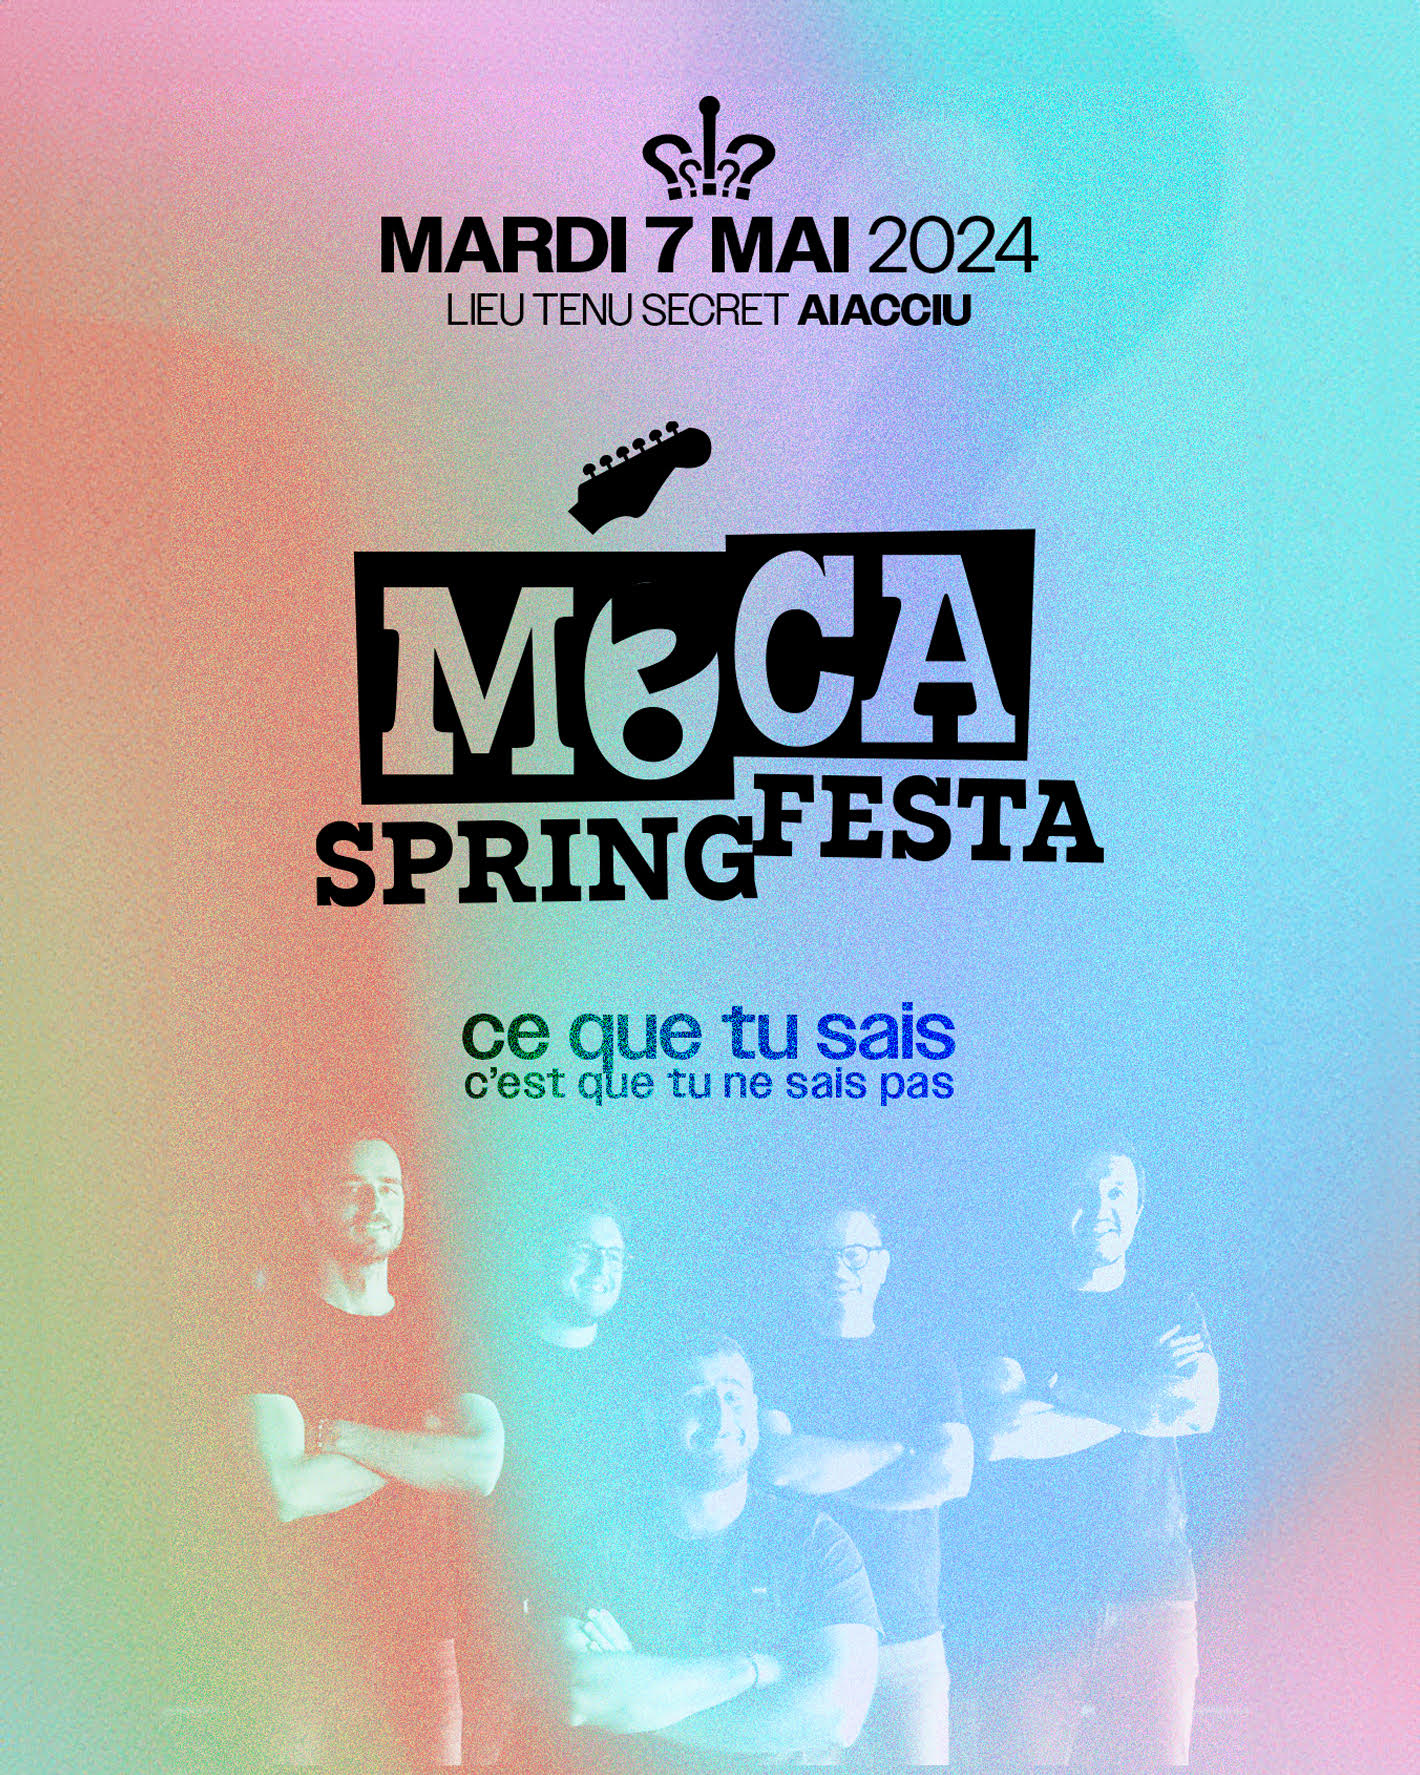 Moca Spring Festa 2024 : Le groupe réserve une surprise de taille aux festivaliers